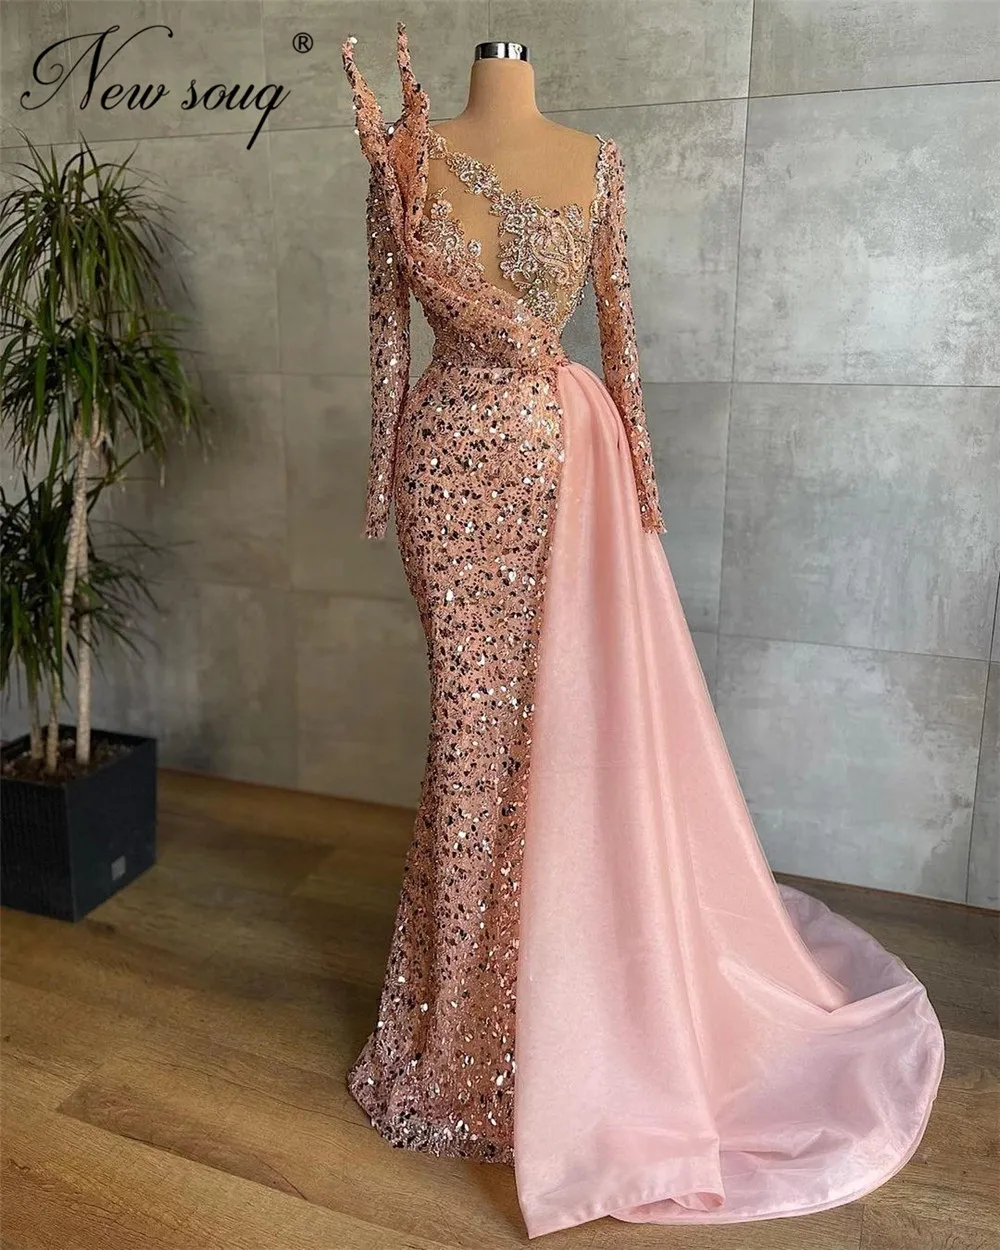 

Unique Pink Mermaid Party Dresses Sparkly Sequins Long Sleeve Evening Dress For Women Robes Du Soir Couture Dubai Celebrity Gown